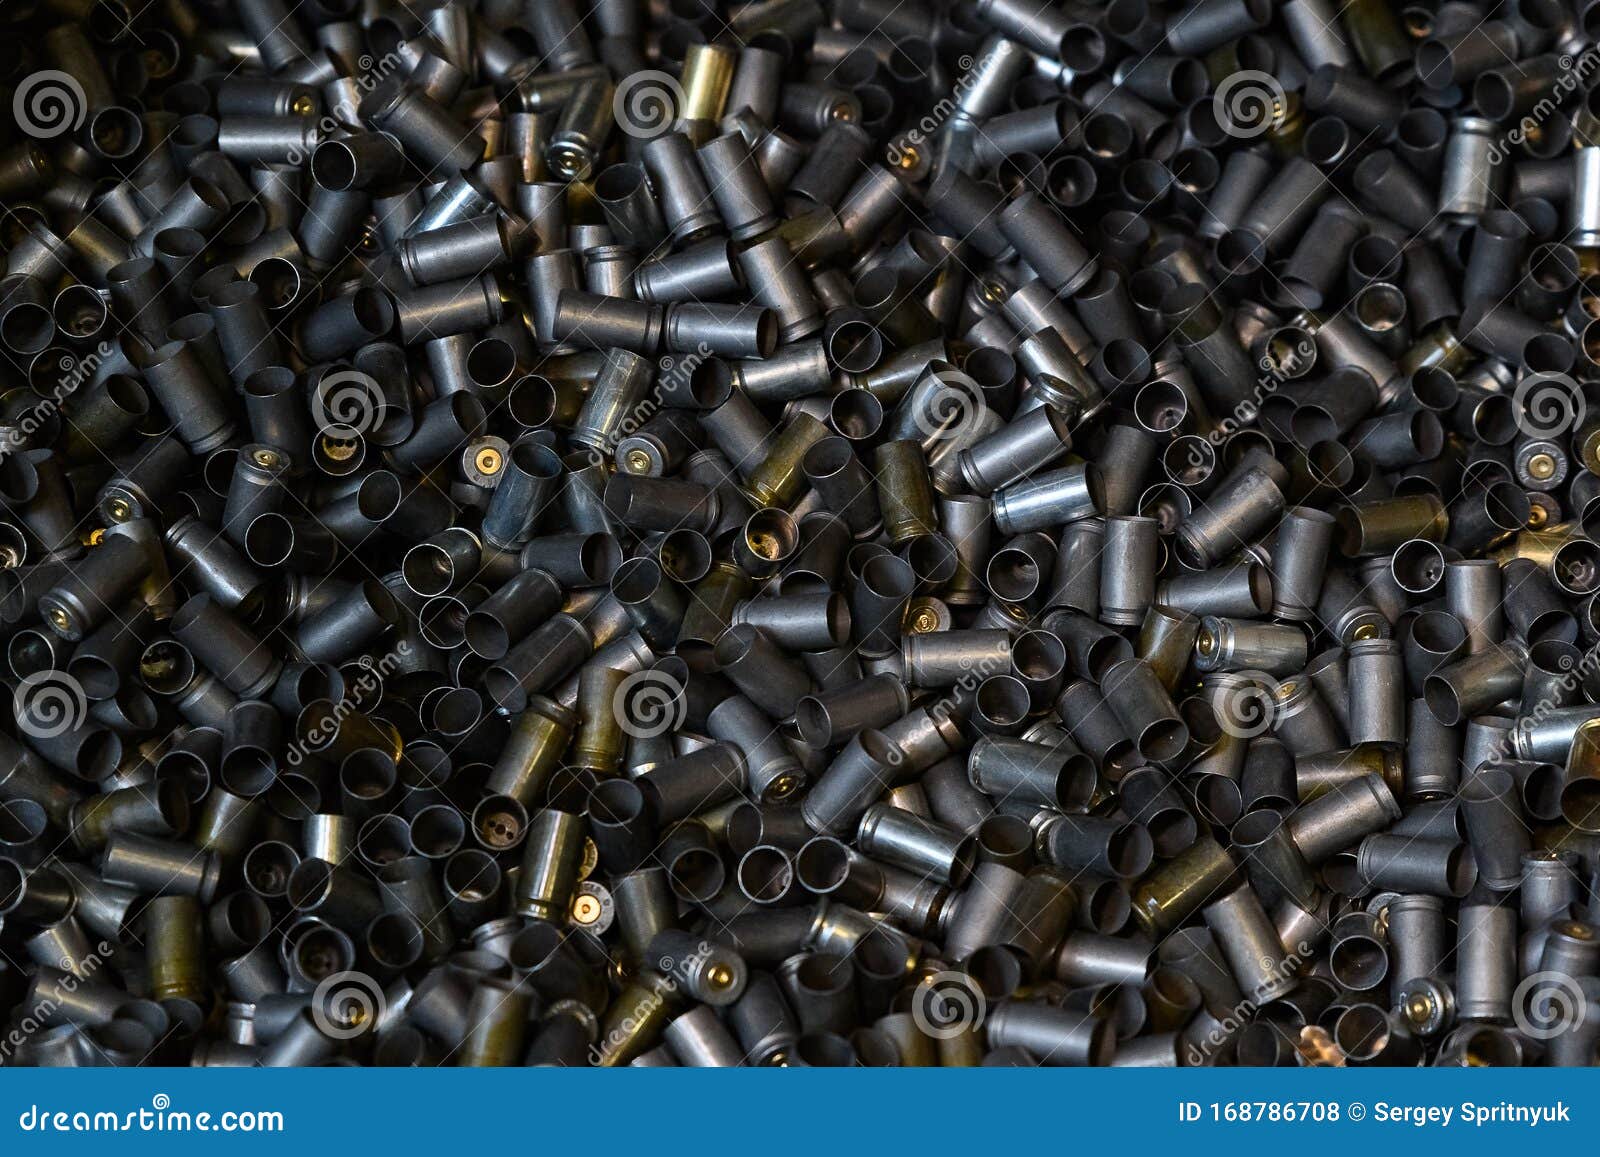 heap of gun bullets. weapon cartridge case sleeve background texture, 9mm. weapon cartridge sleeves.gun bullet pattern close up